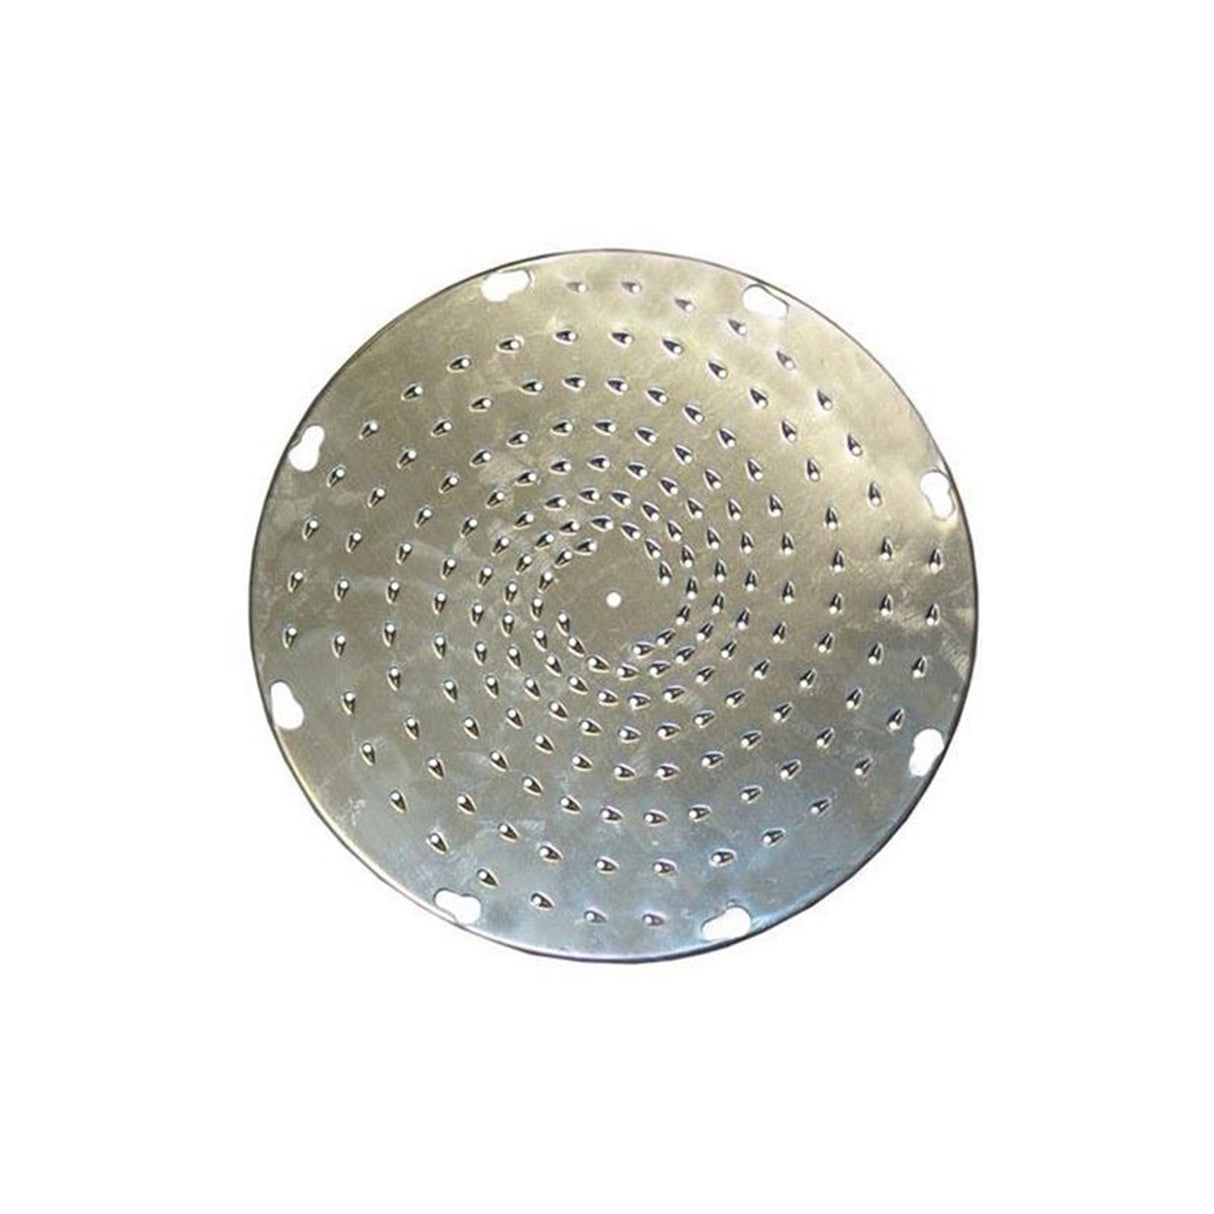 UVS-9332 | S/Steel Shredder Disc, 3/32" Holes